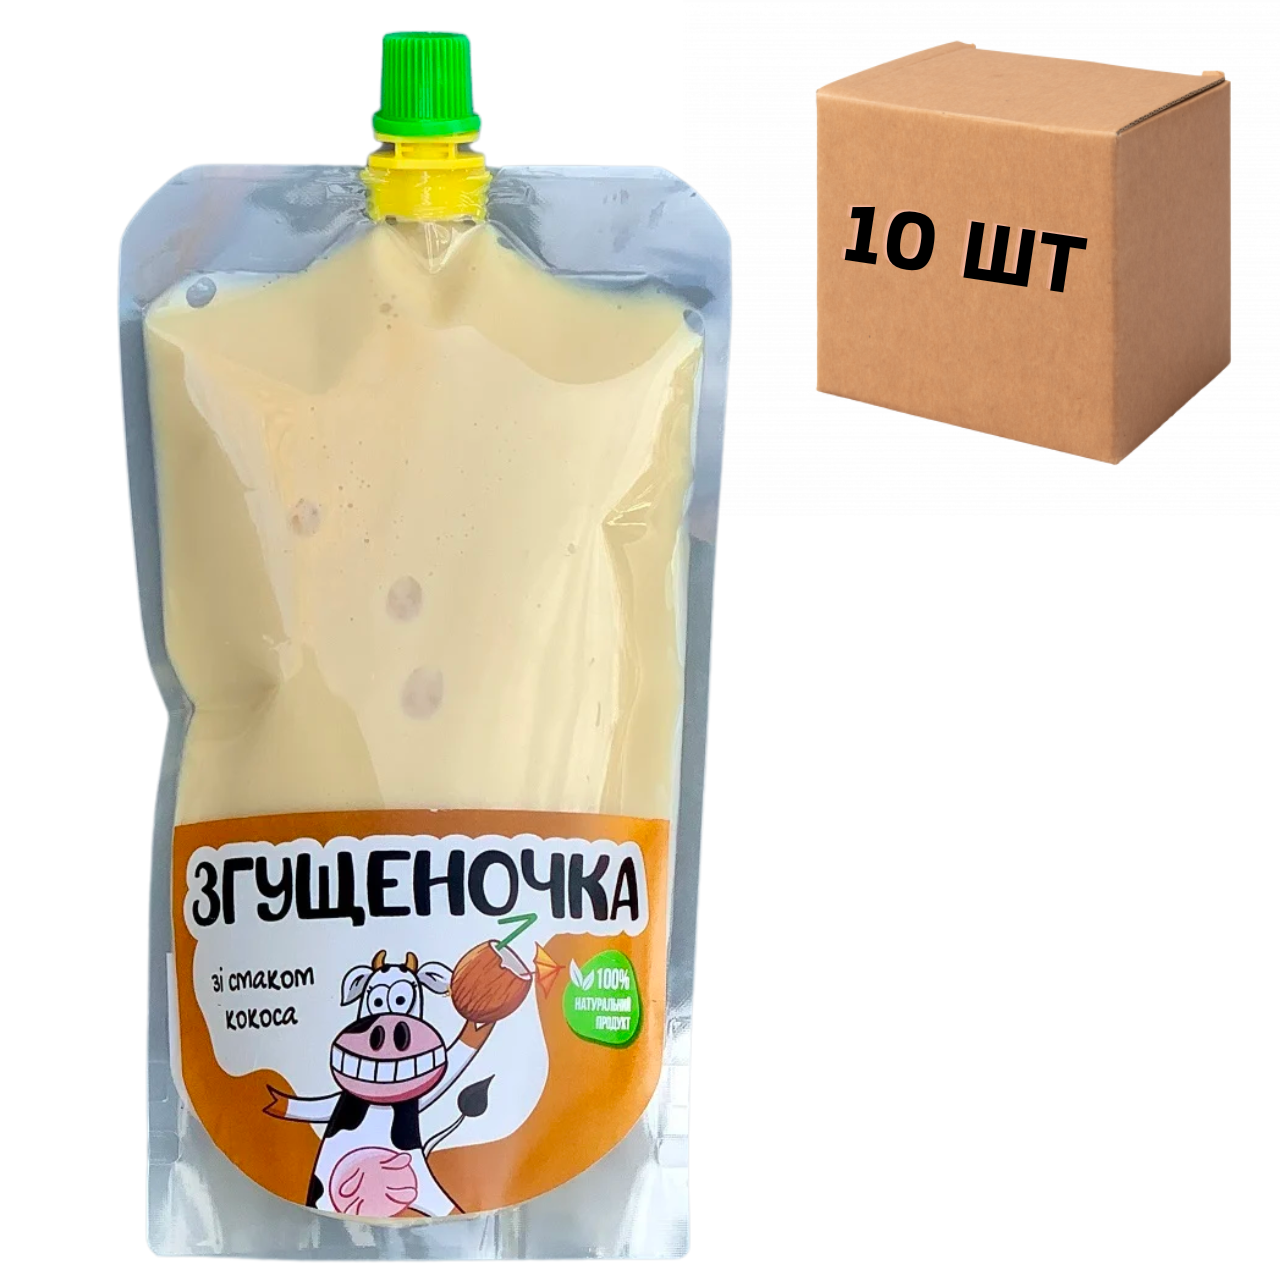 Ящик згущеного молока зі смаком кокоса в дой-паках 10 шт по 500 г.